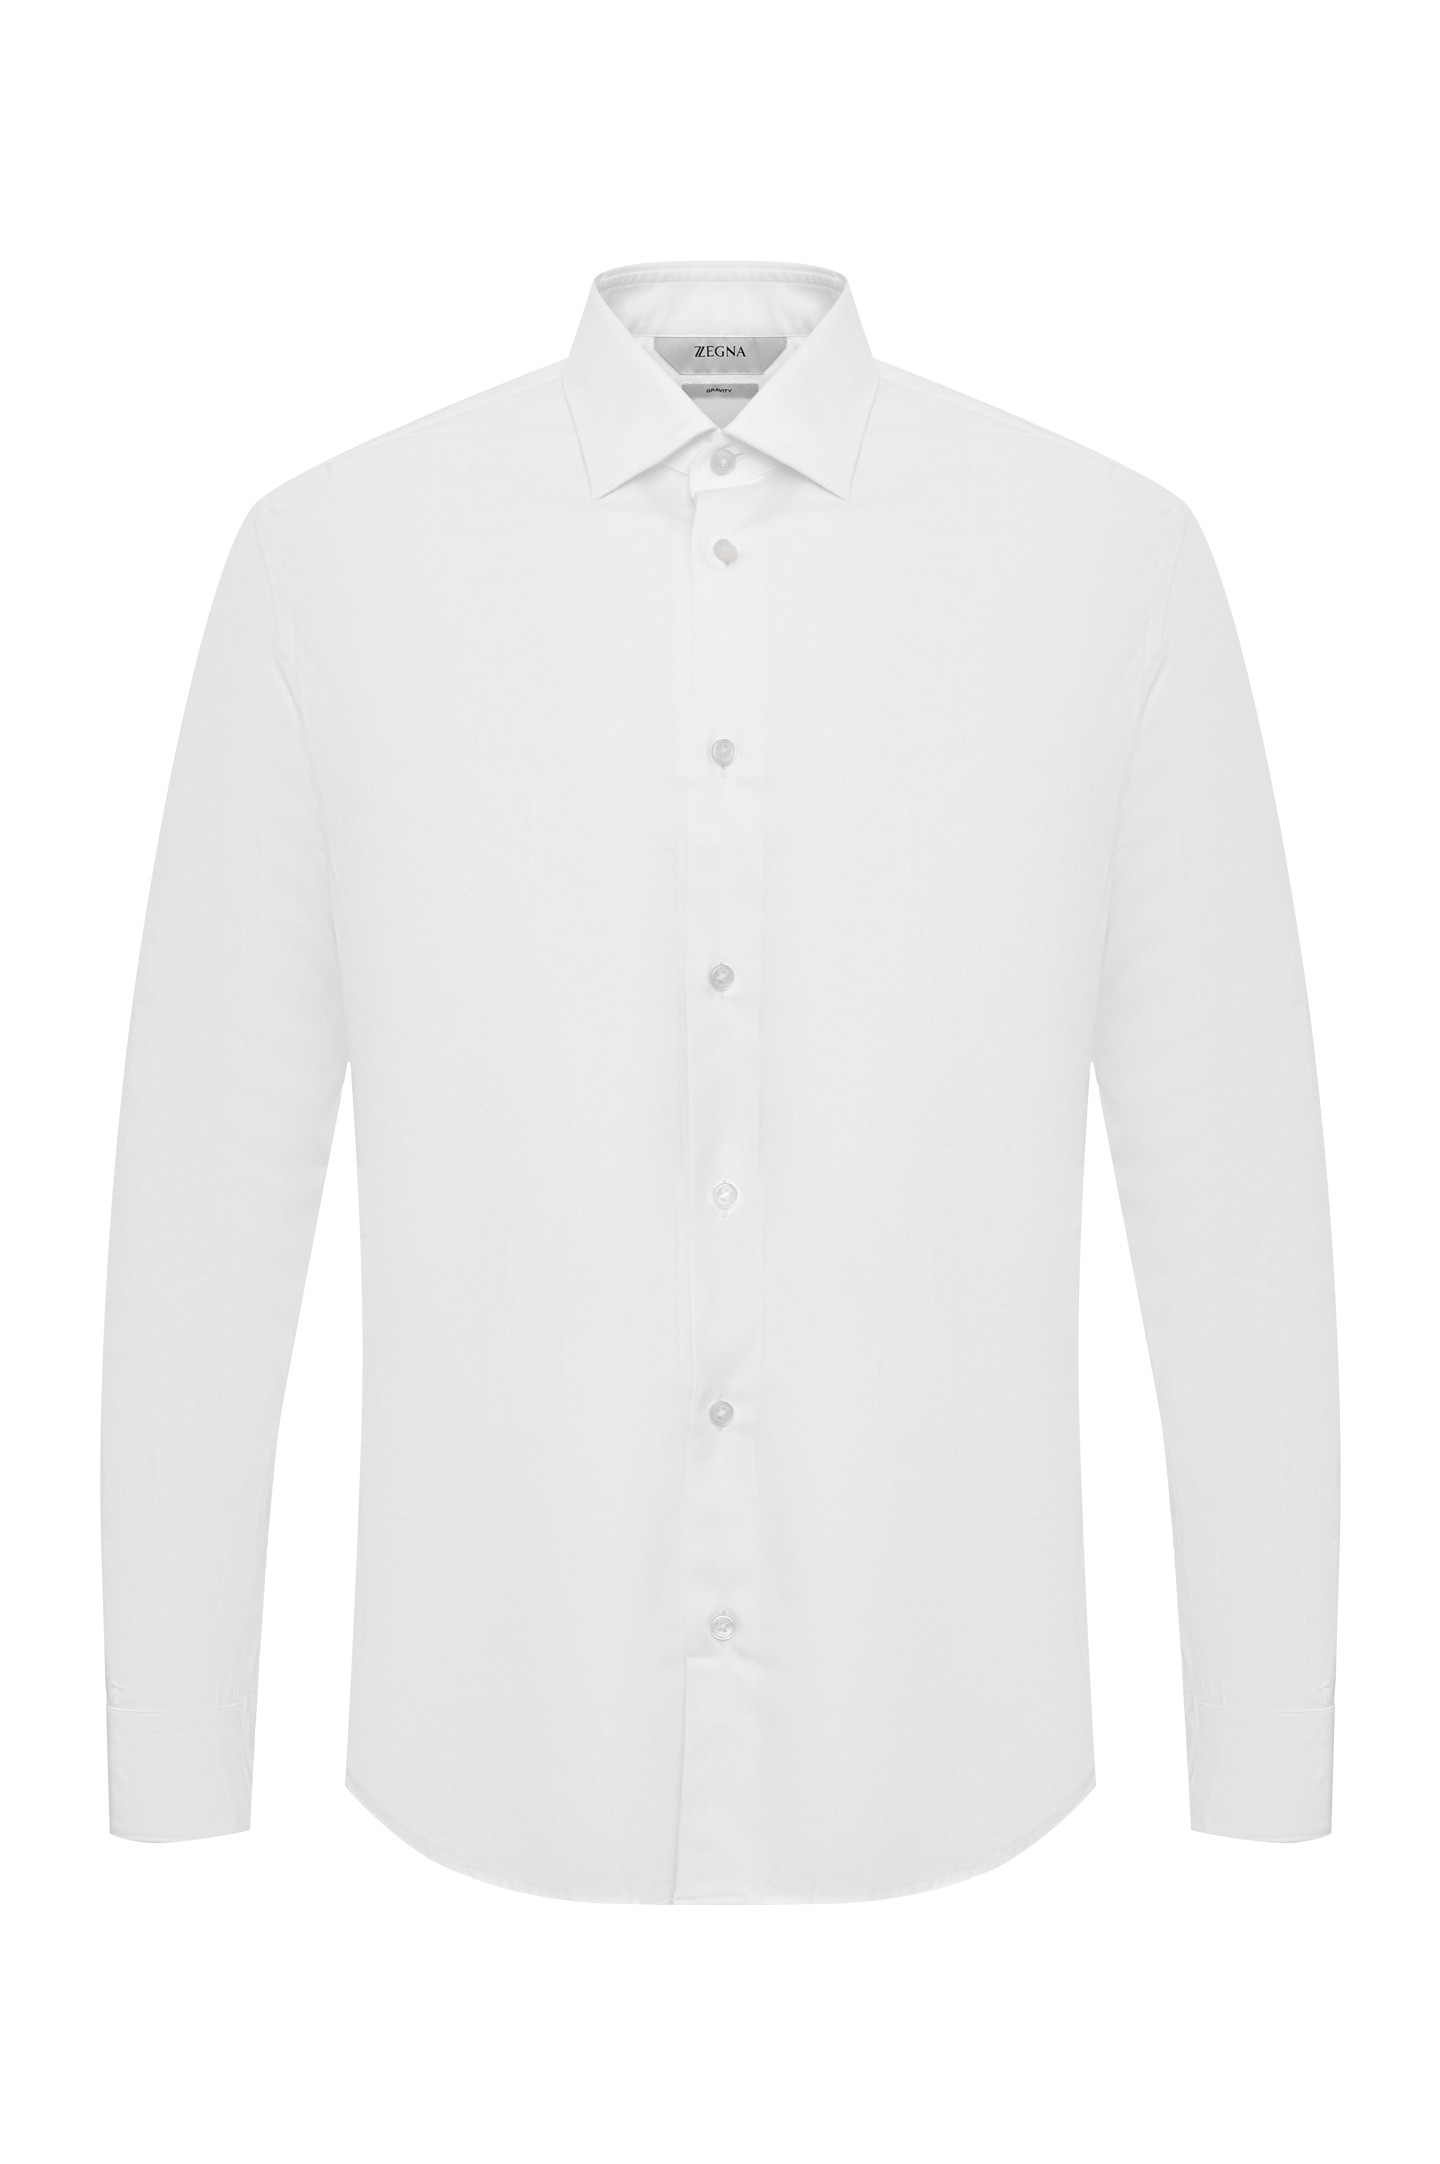 Рубашка Z ZEGNA 305120 ZCRC1, цвет: Белый, Мужской